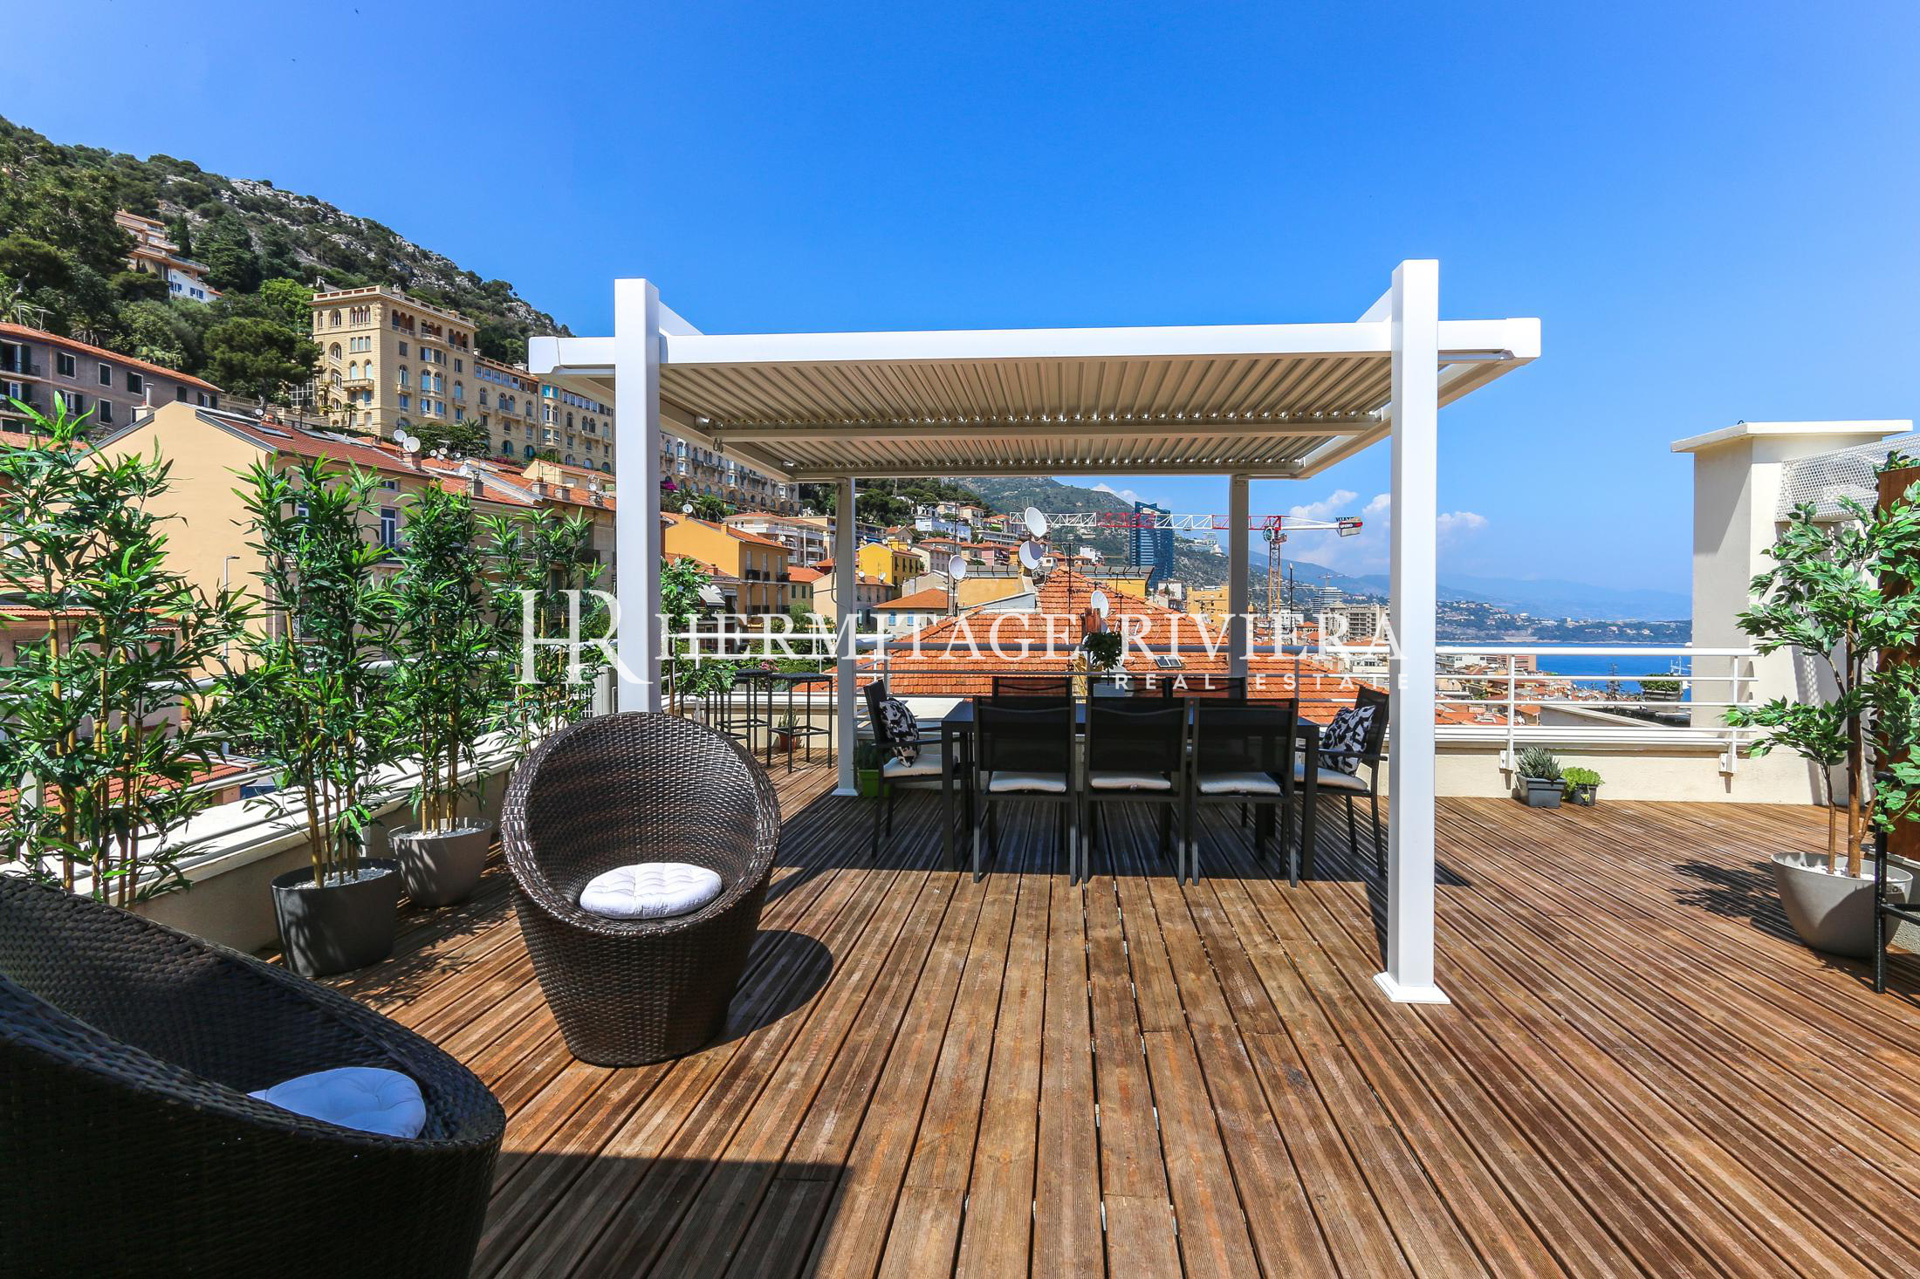 Penthouse-duplex rénové avec vue sur Monaco (image 4)